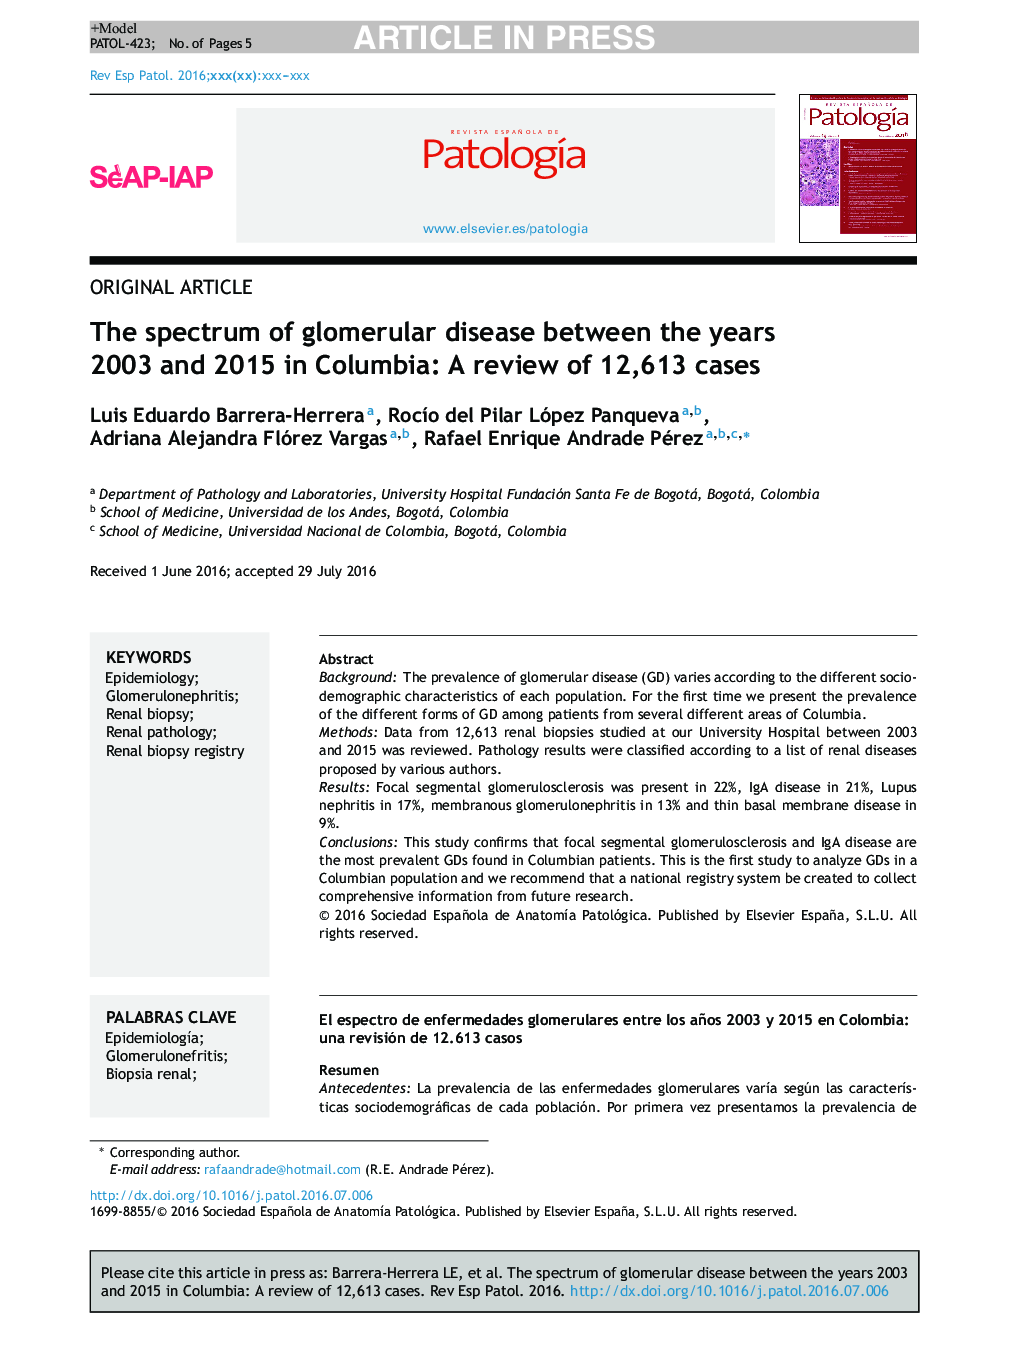 طیف بیماری گلومرولی بین سال های 2003 و 2015 در کلمبیا: بازبینی 121313 مورد 